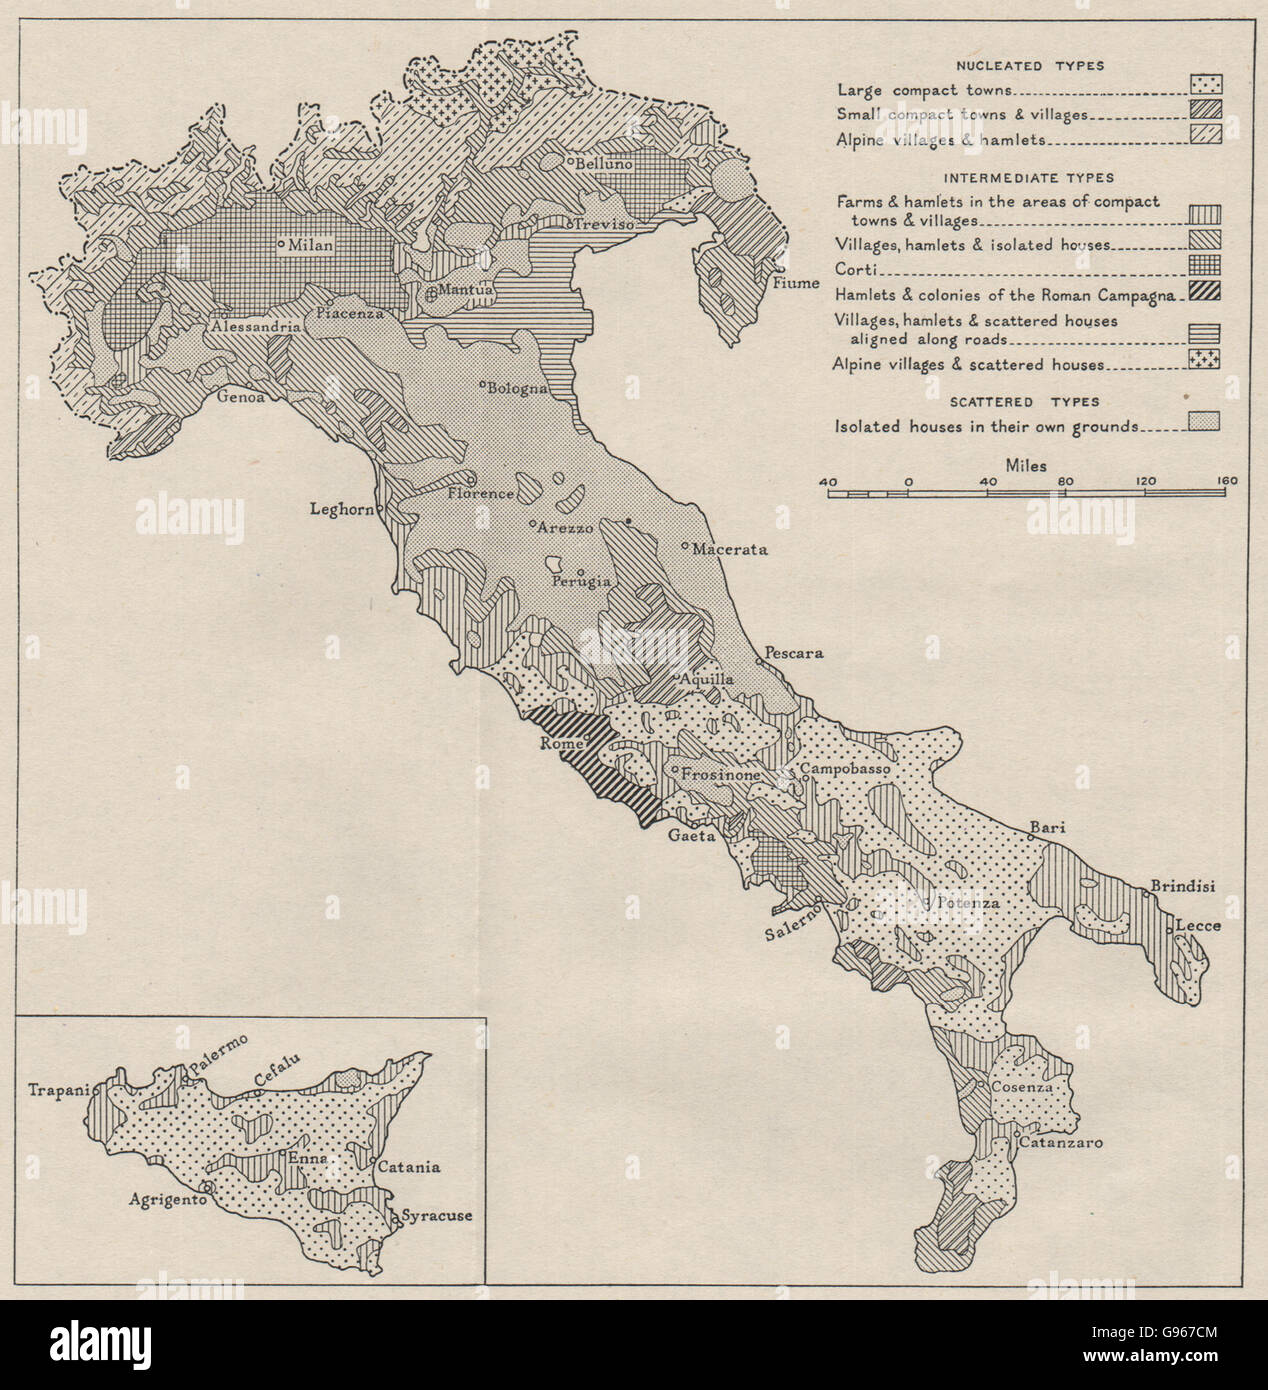 Italia: tipi di insediamento rurale. WW2 ROYAL NAVY MAPPA DI INTELLIGENCE, 1944 Foto Stock